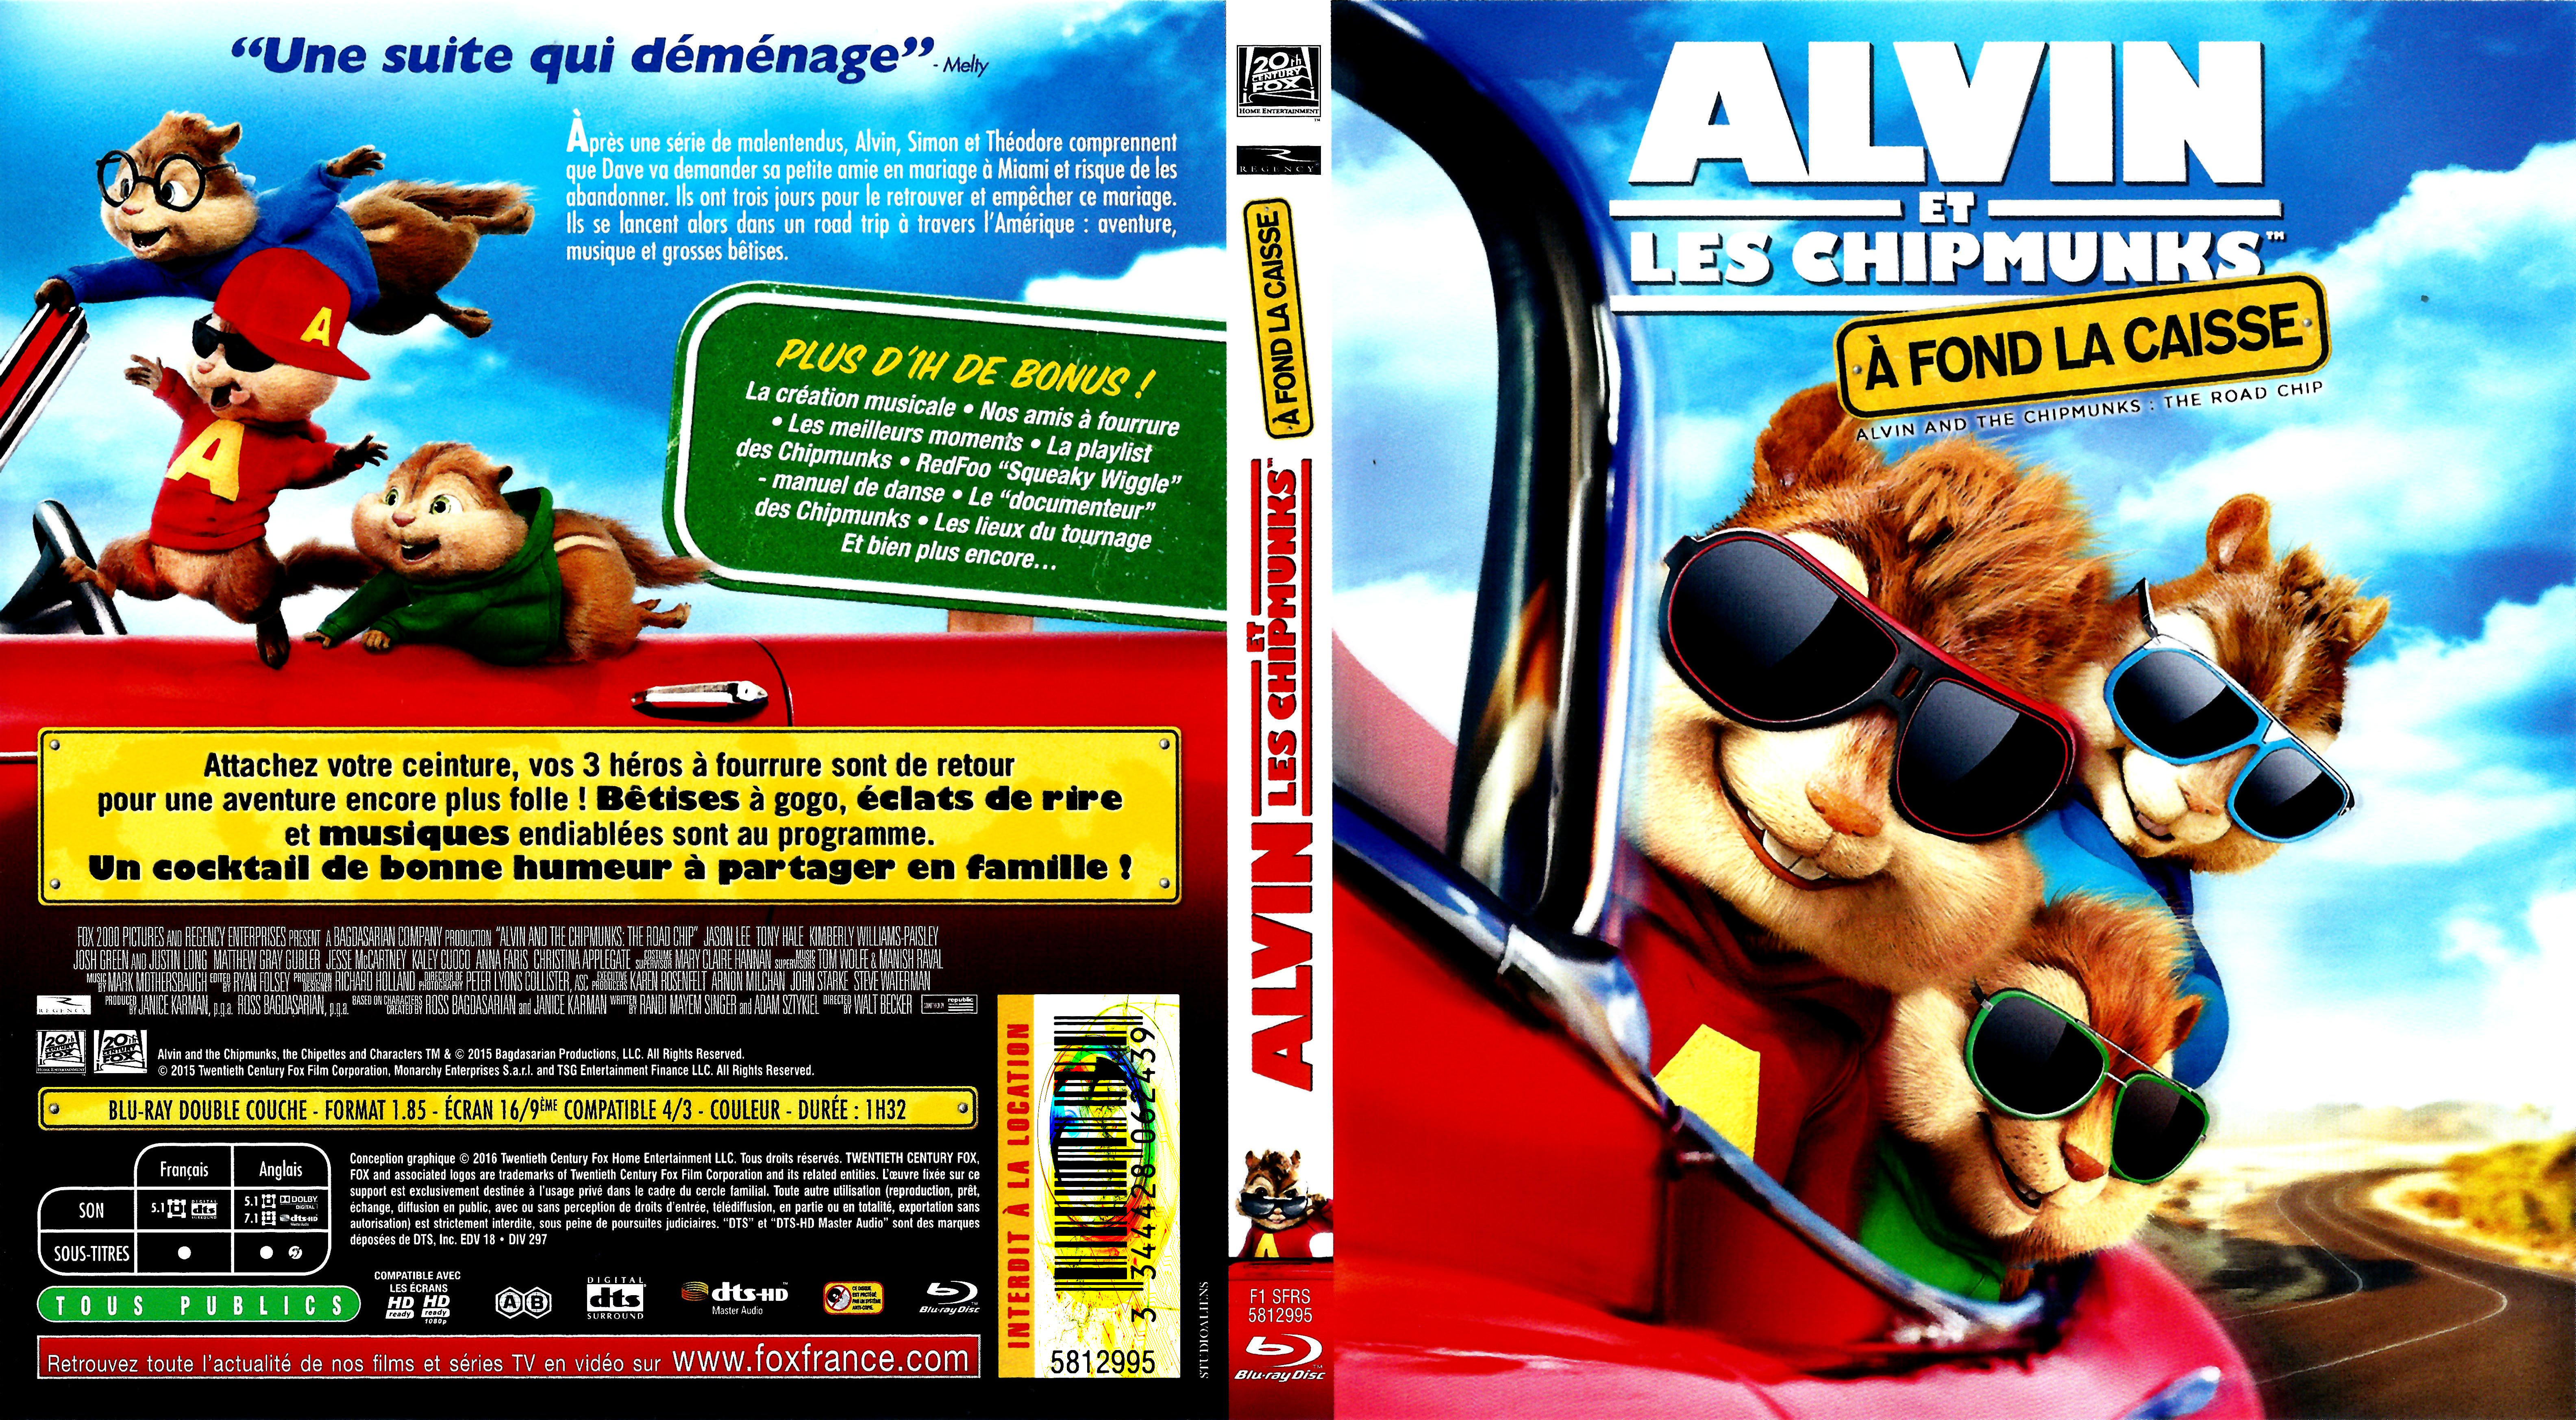 Jaquette DVD Alvin et les chipmunks  fond la caisse (BLU-RAY)